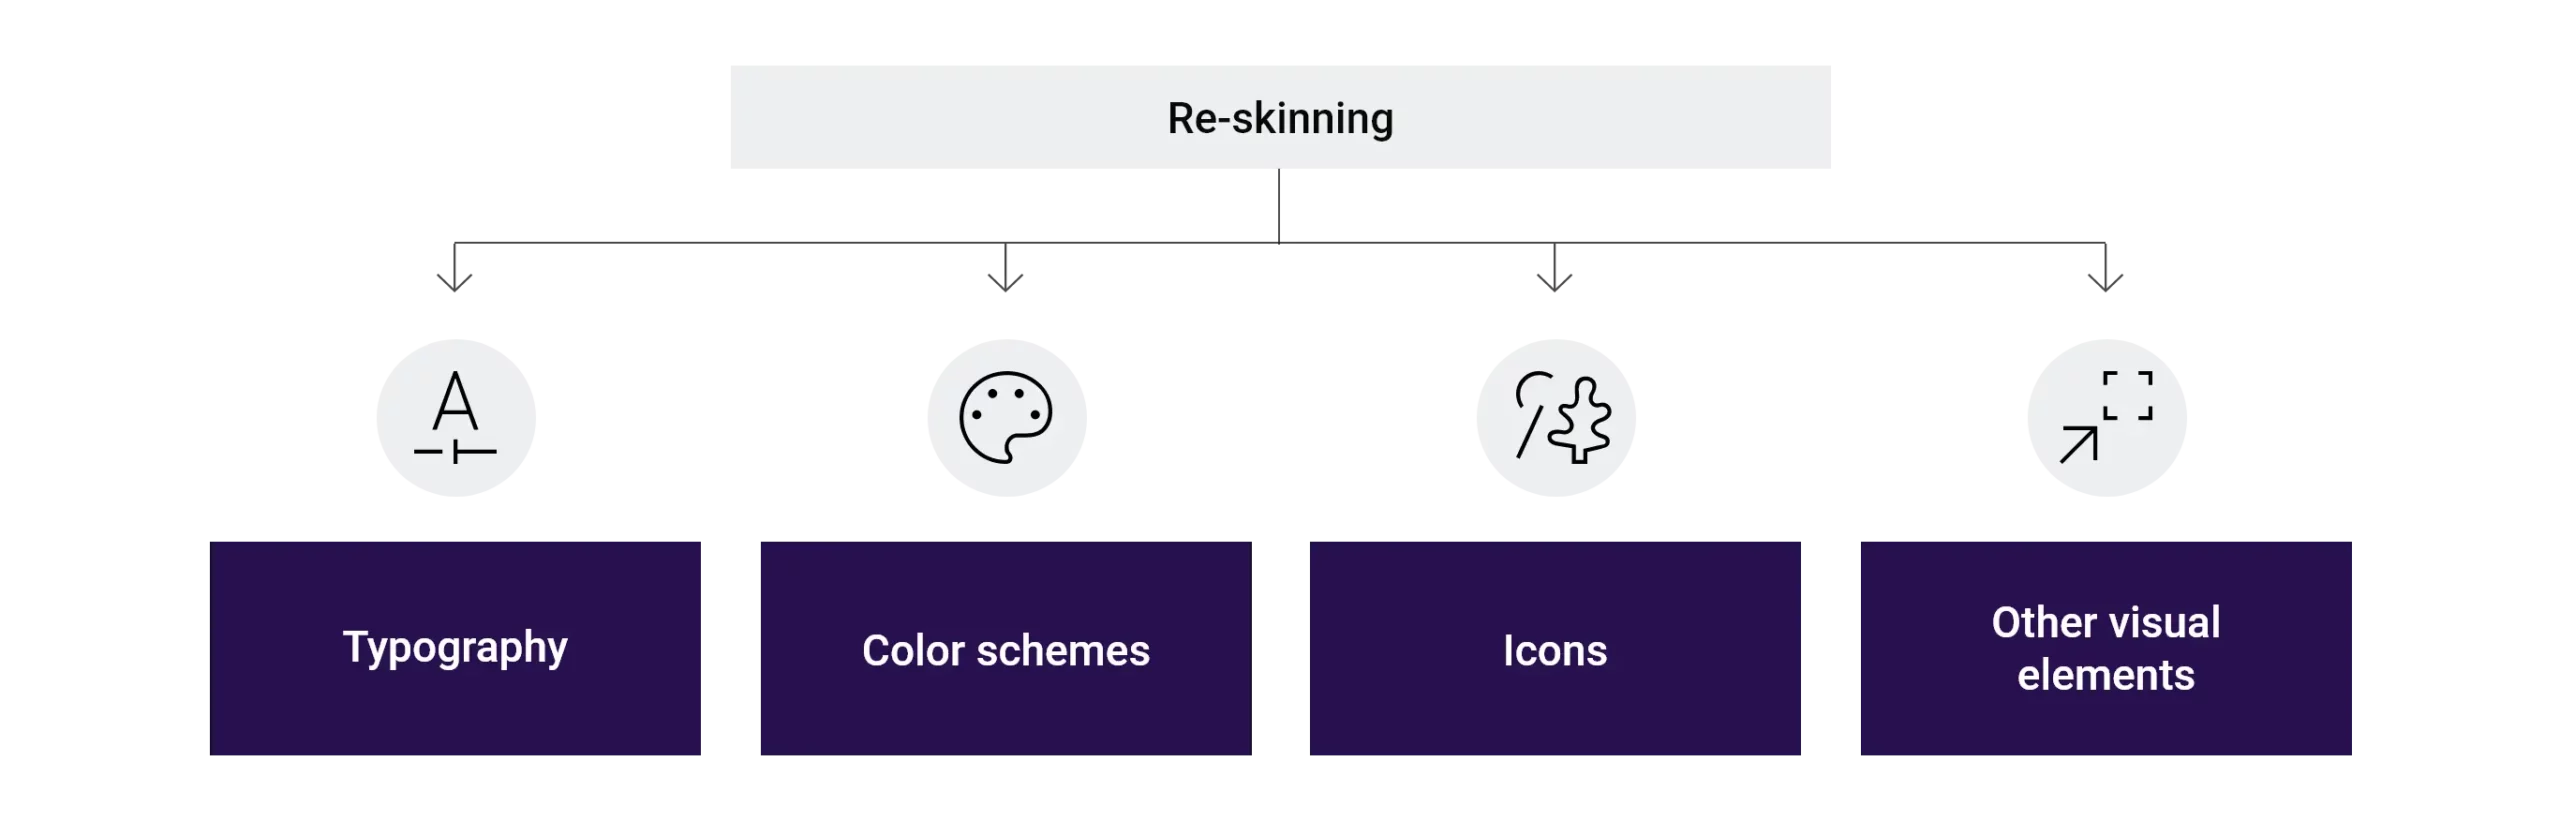 UI / UX Design re-skinning 